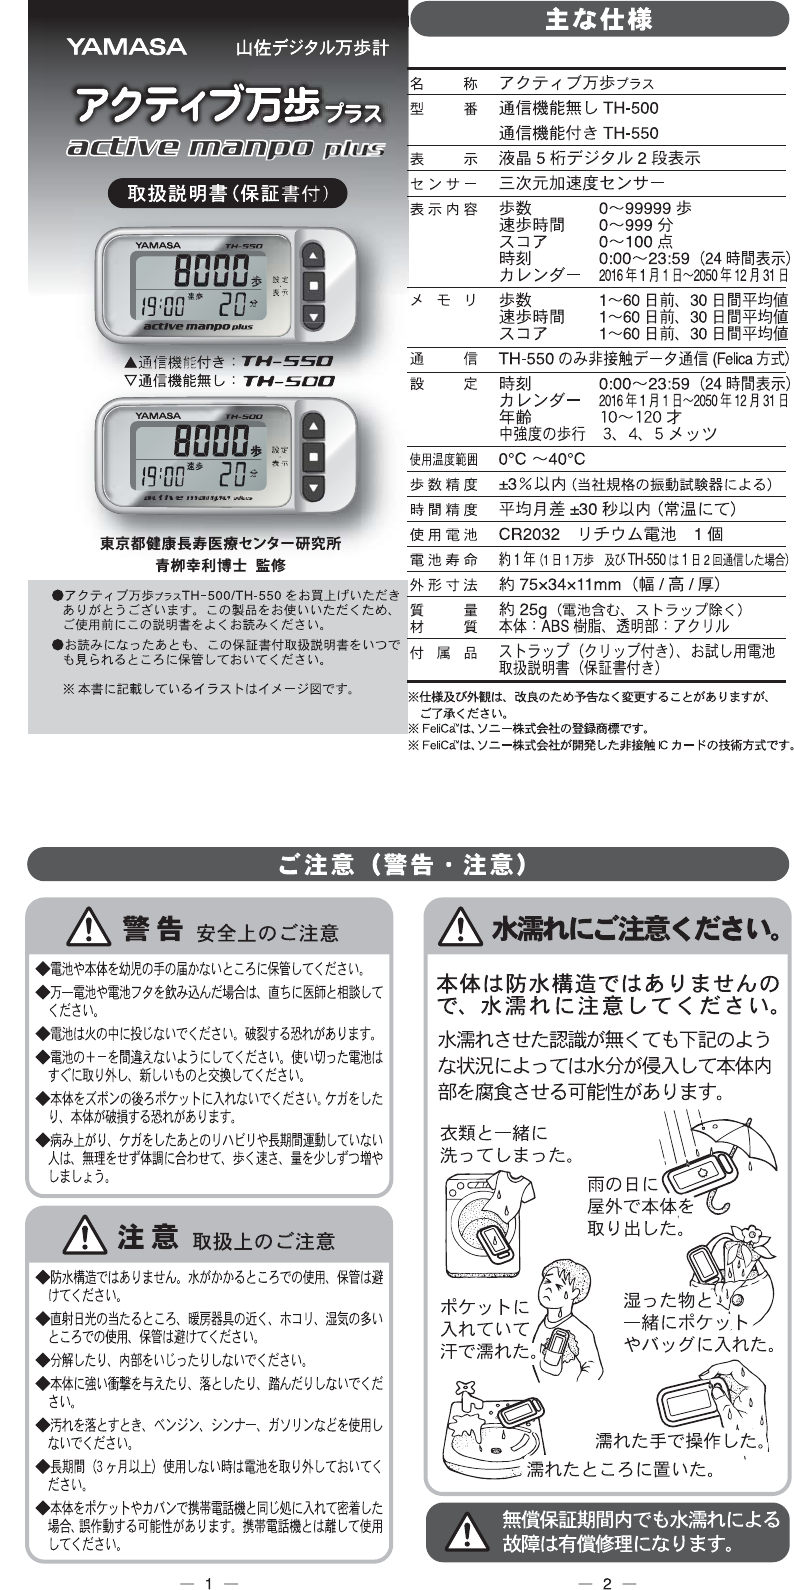 説明書電池有・YAMASA 万歩計 PZ-250 カロリー消費計 歩行距離表示計 